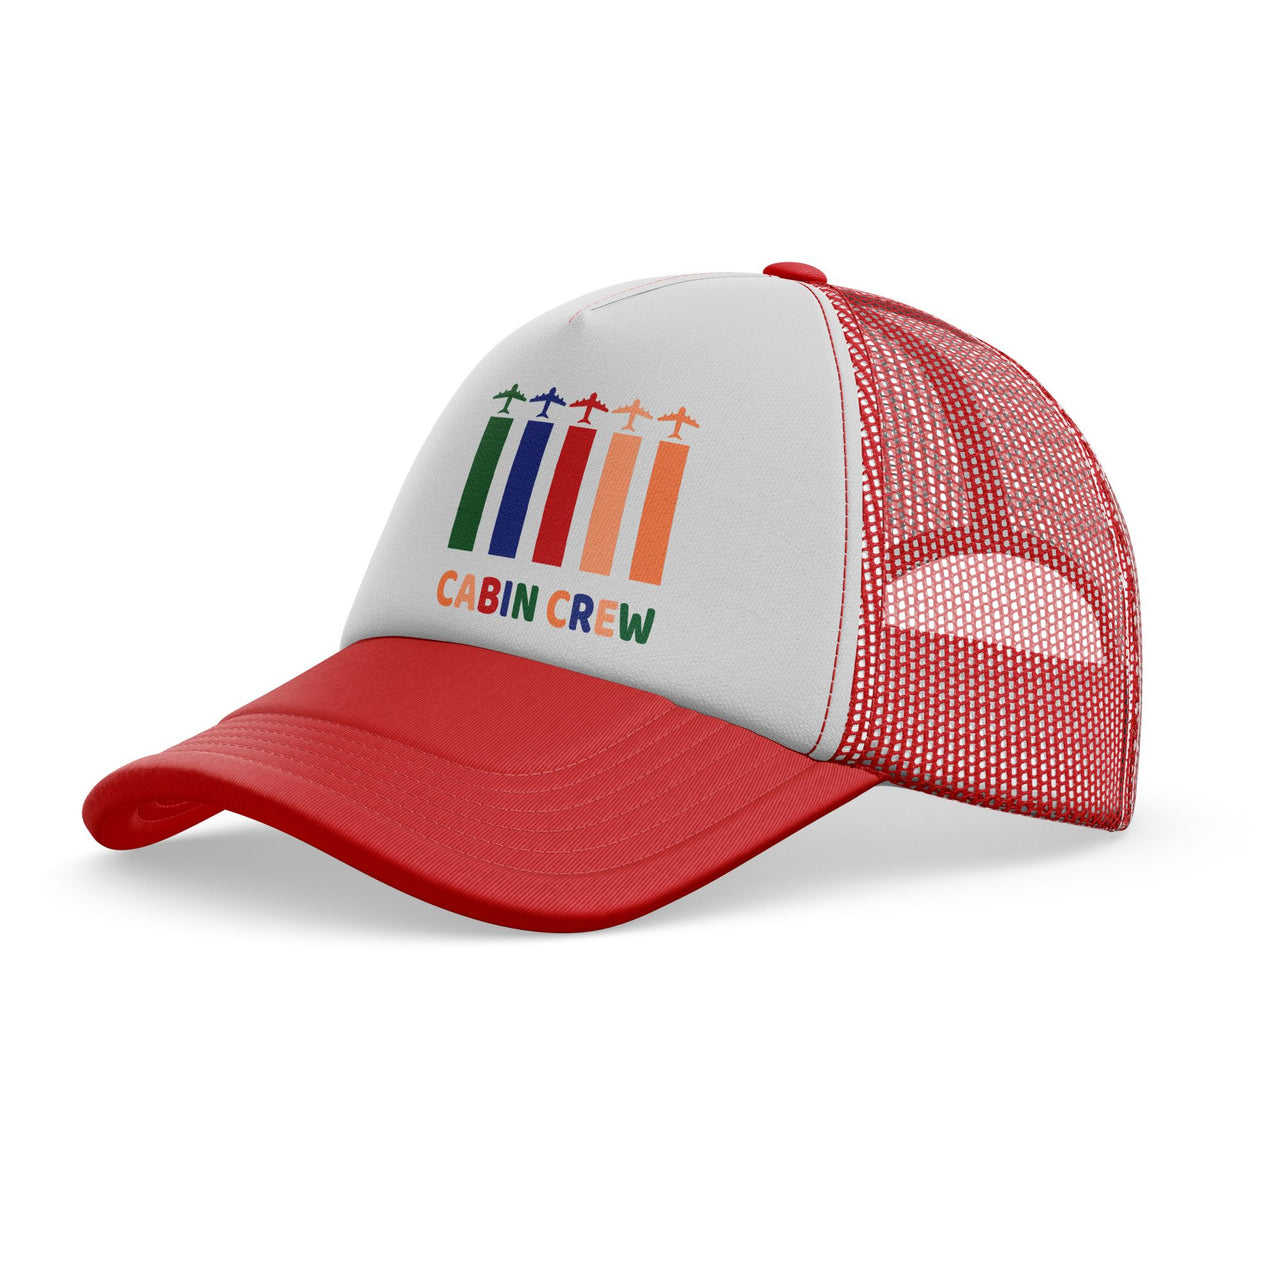 Colourful Cabin Crew Designed Trucker Caps & Hats